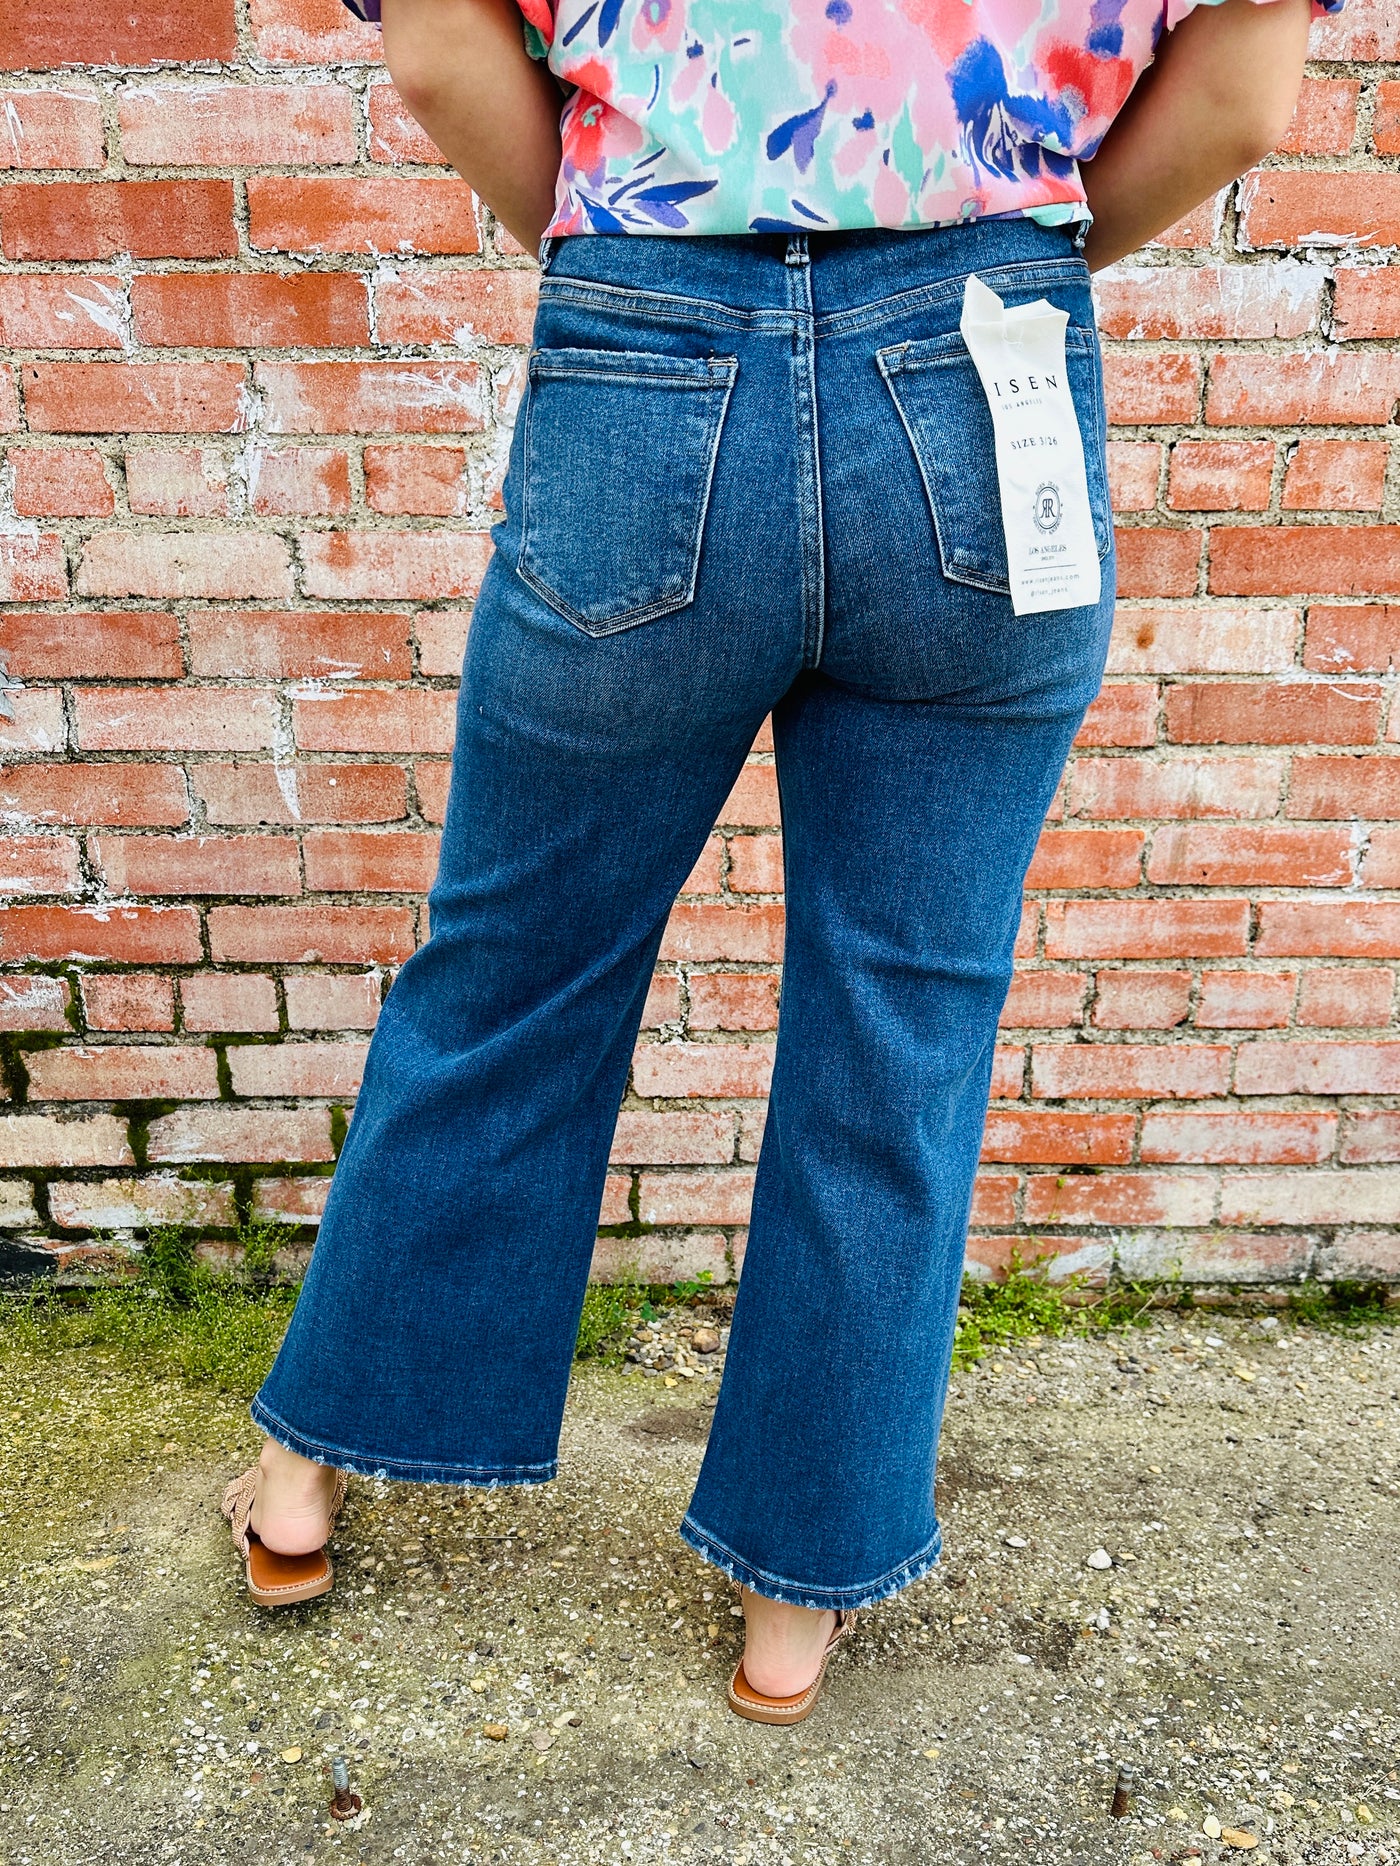 Risen Unforgettable Memories Cropped Wide Leg Denim Jeans-Risen-Shop Anchored Bliss Women's Boutique Clothing Store